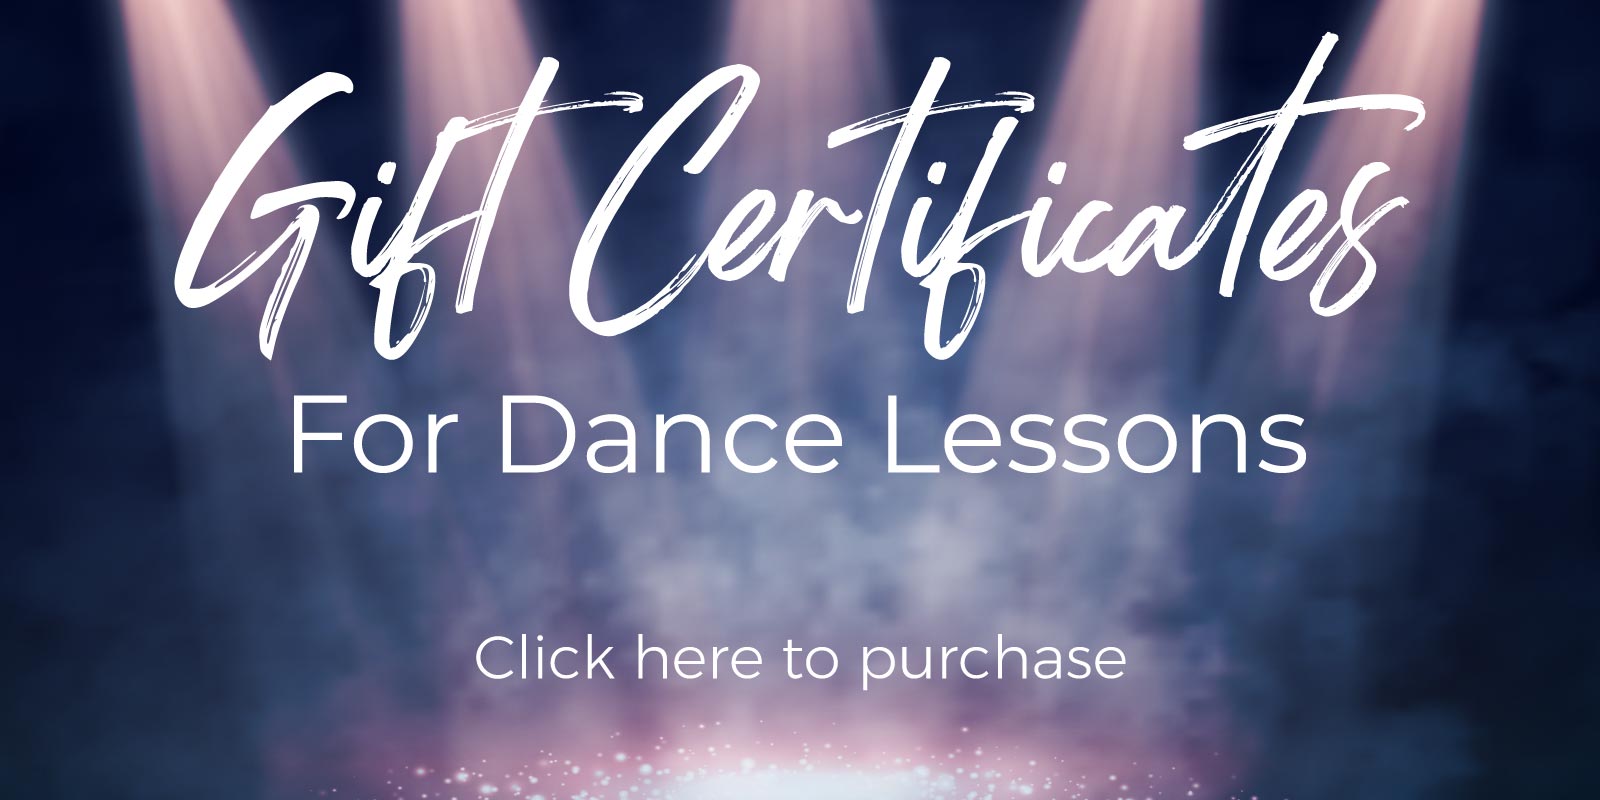 dance lesson gift certificates in richmond va